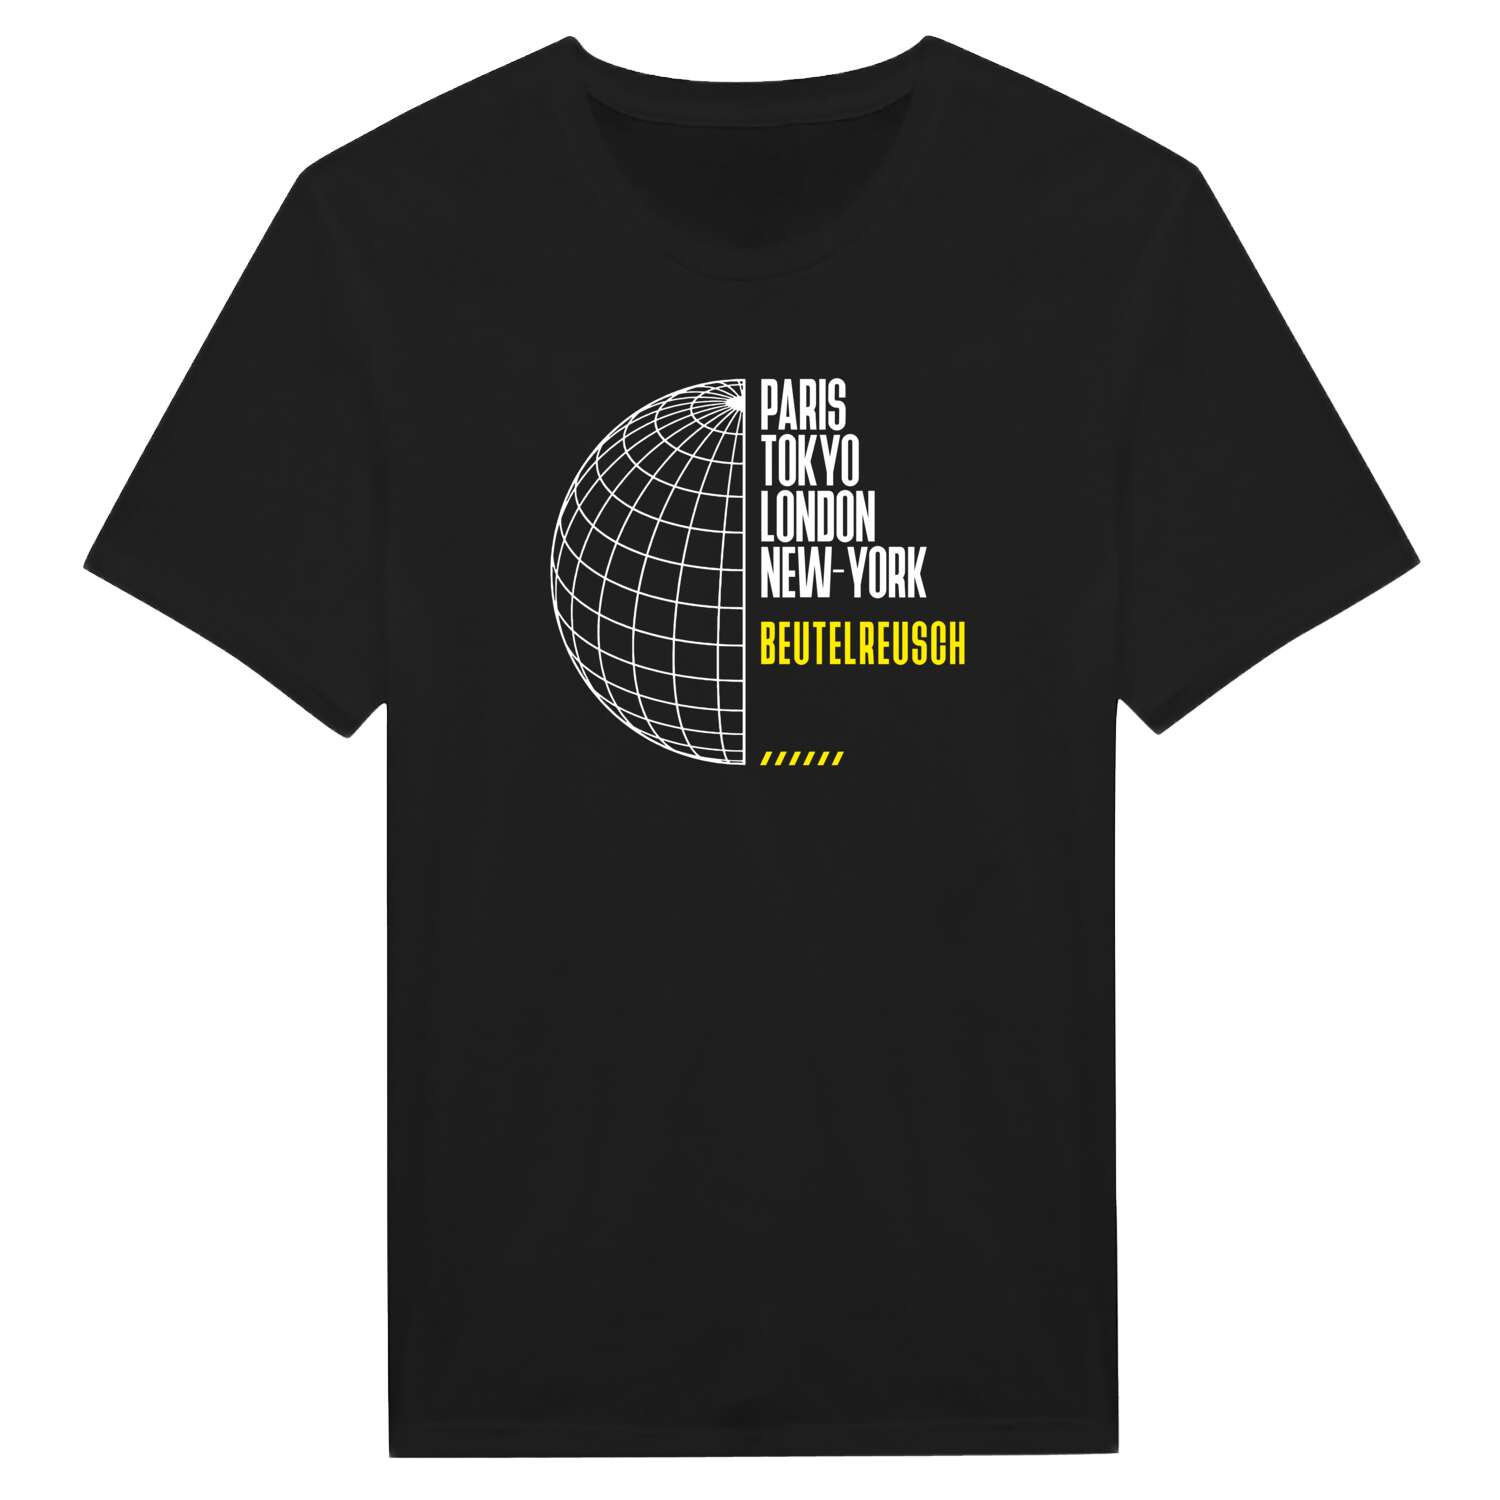 Beutelreusch T-Shirt »Paris Tokyo London«